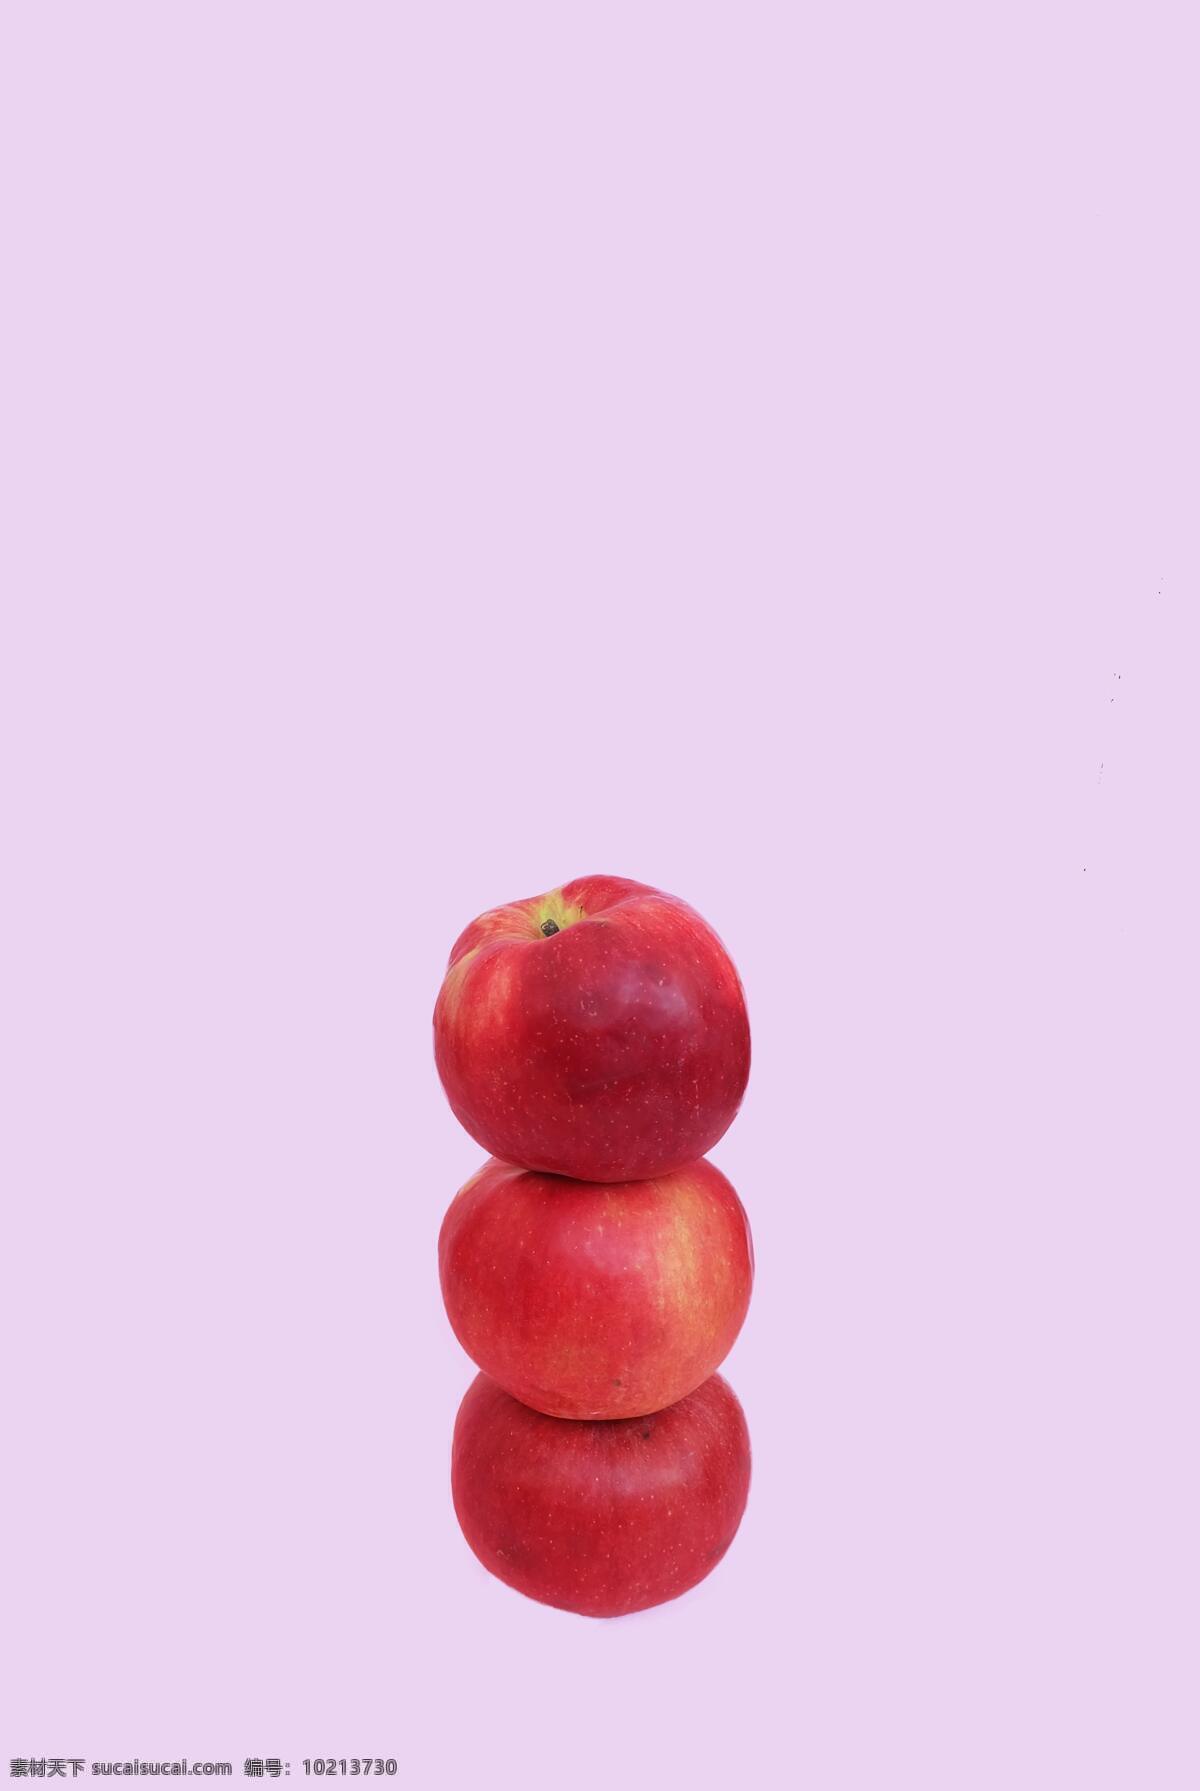 粉色背景 平安果 大红苹果 水果 自然景观